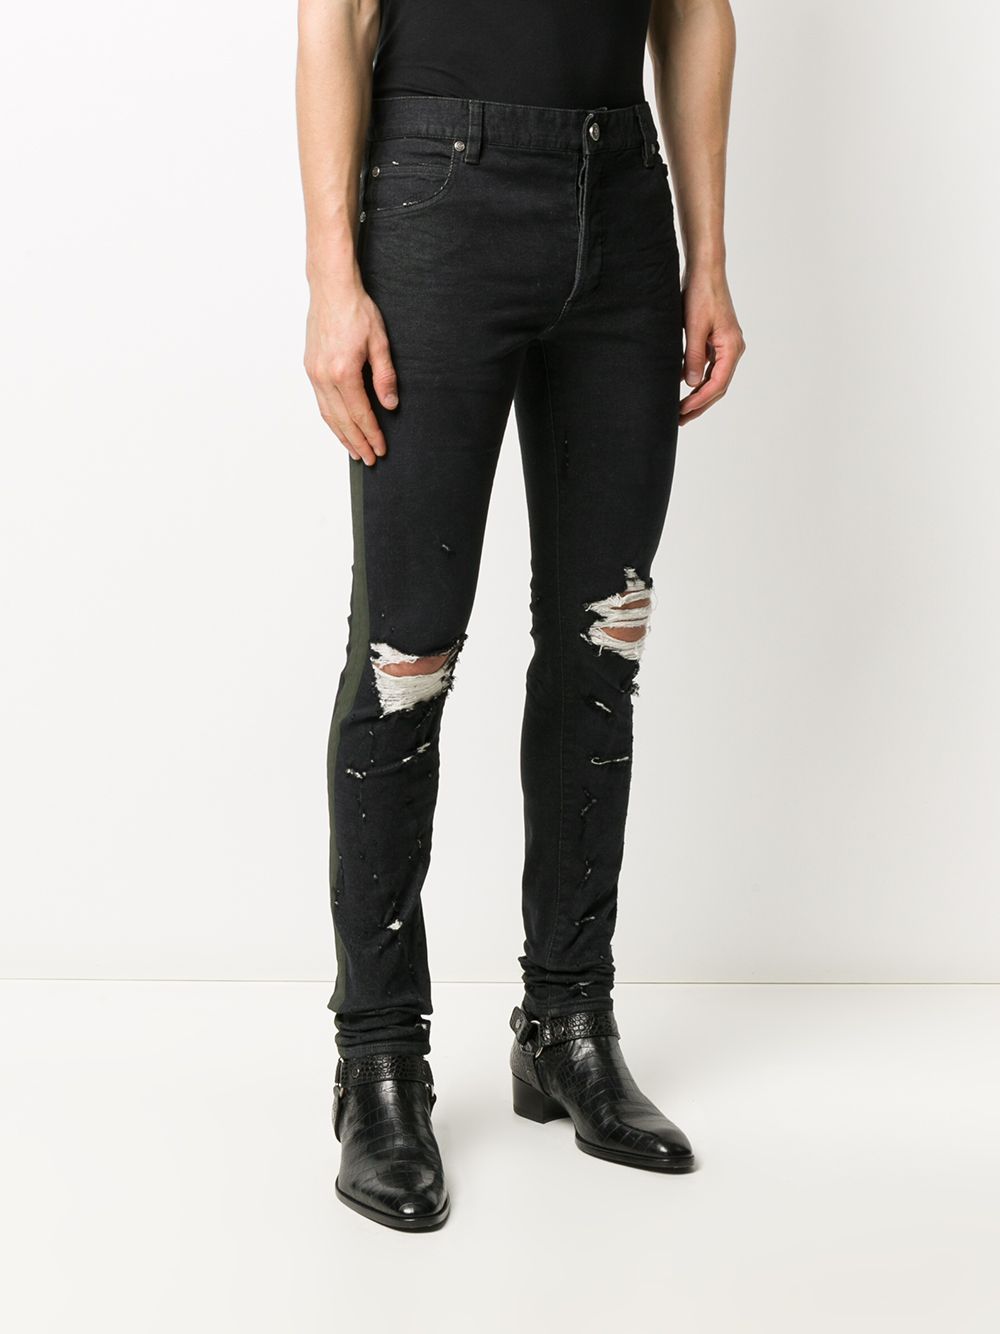 фото Balmain джинсы скинни с эффектом потертости